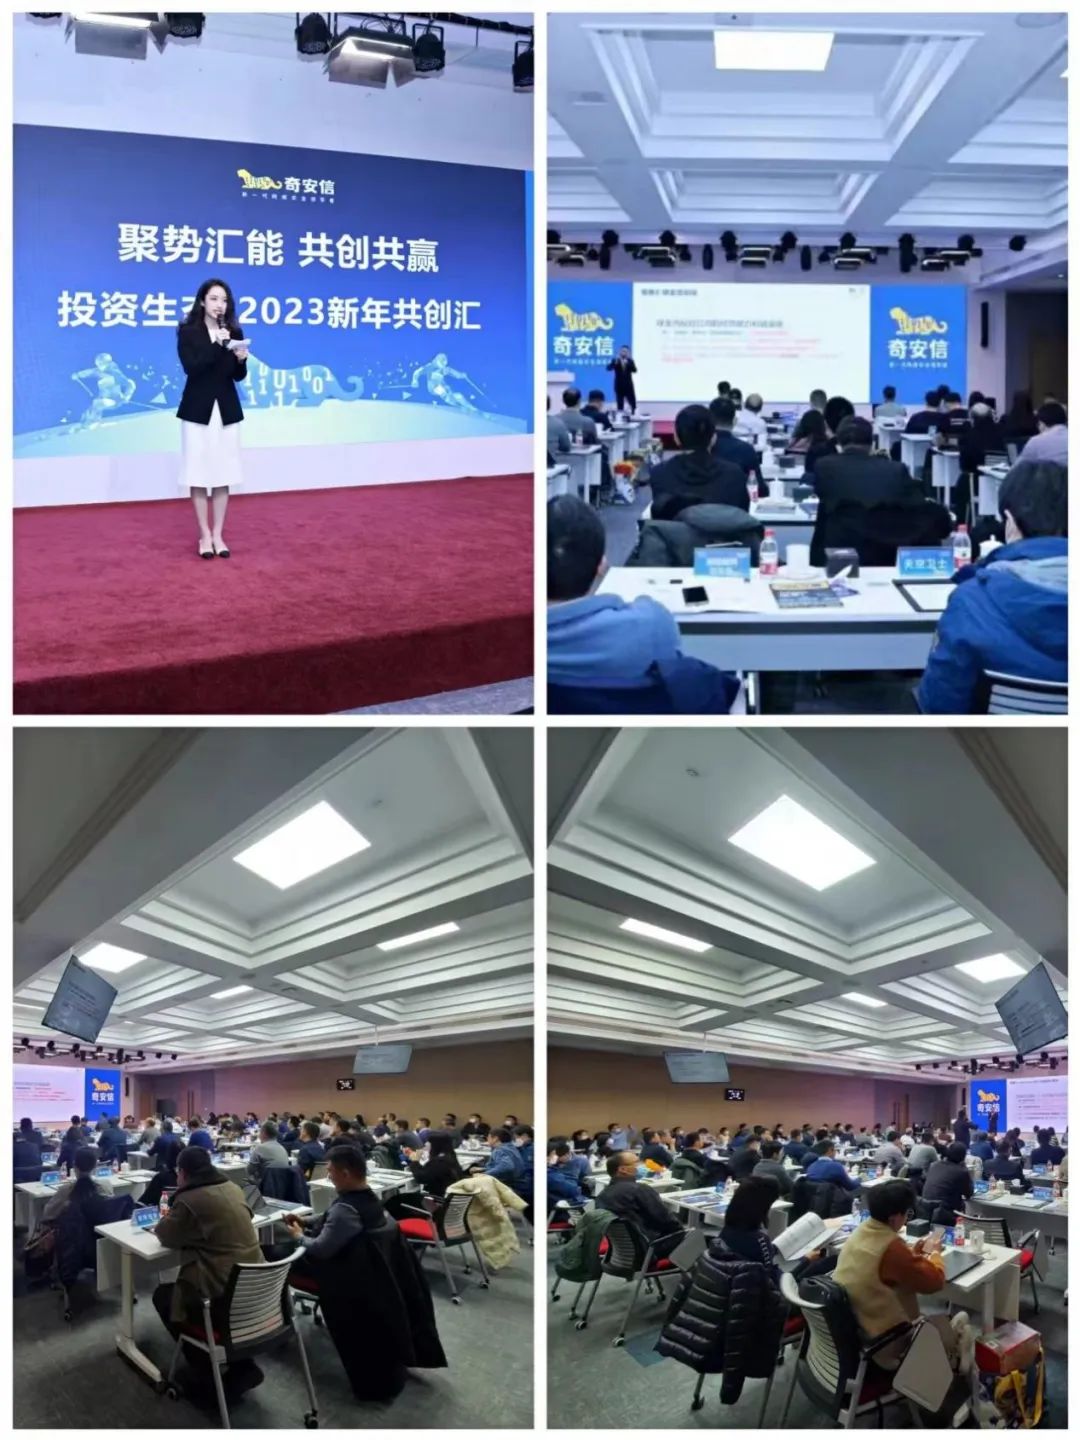 奇安信集团“投资生态·2023共创汇”在京举行 全栈赋能网安生态伙伴